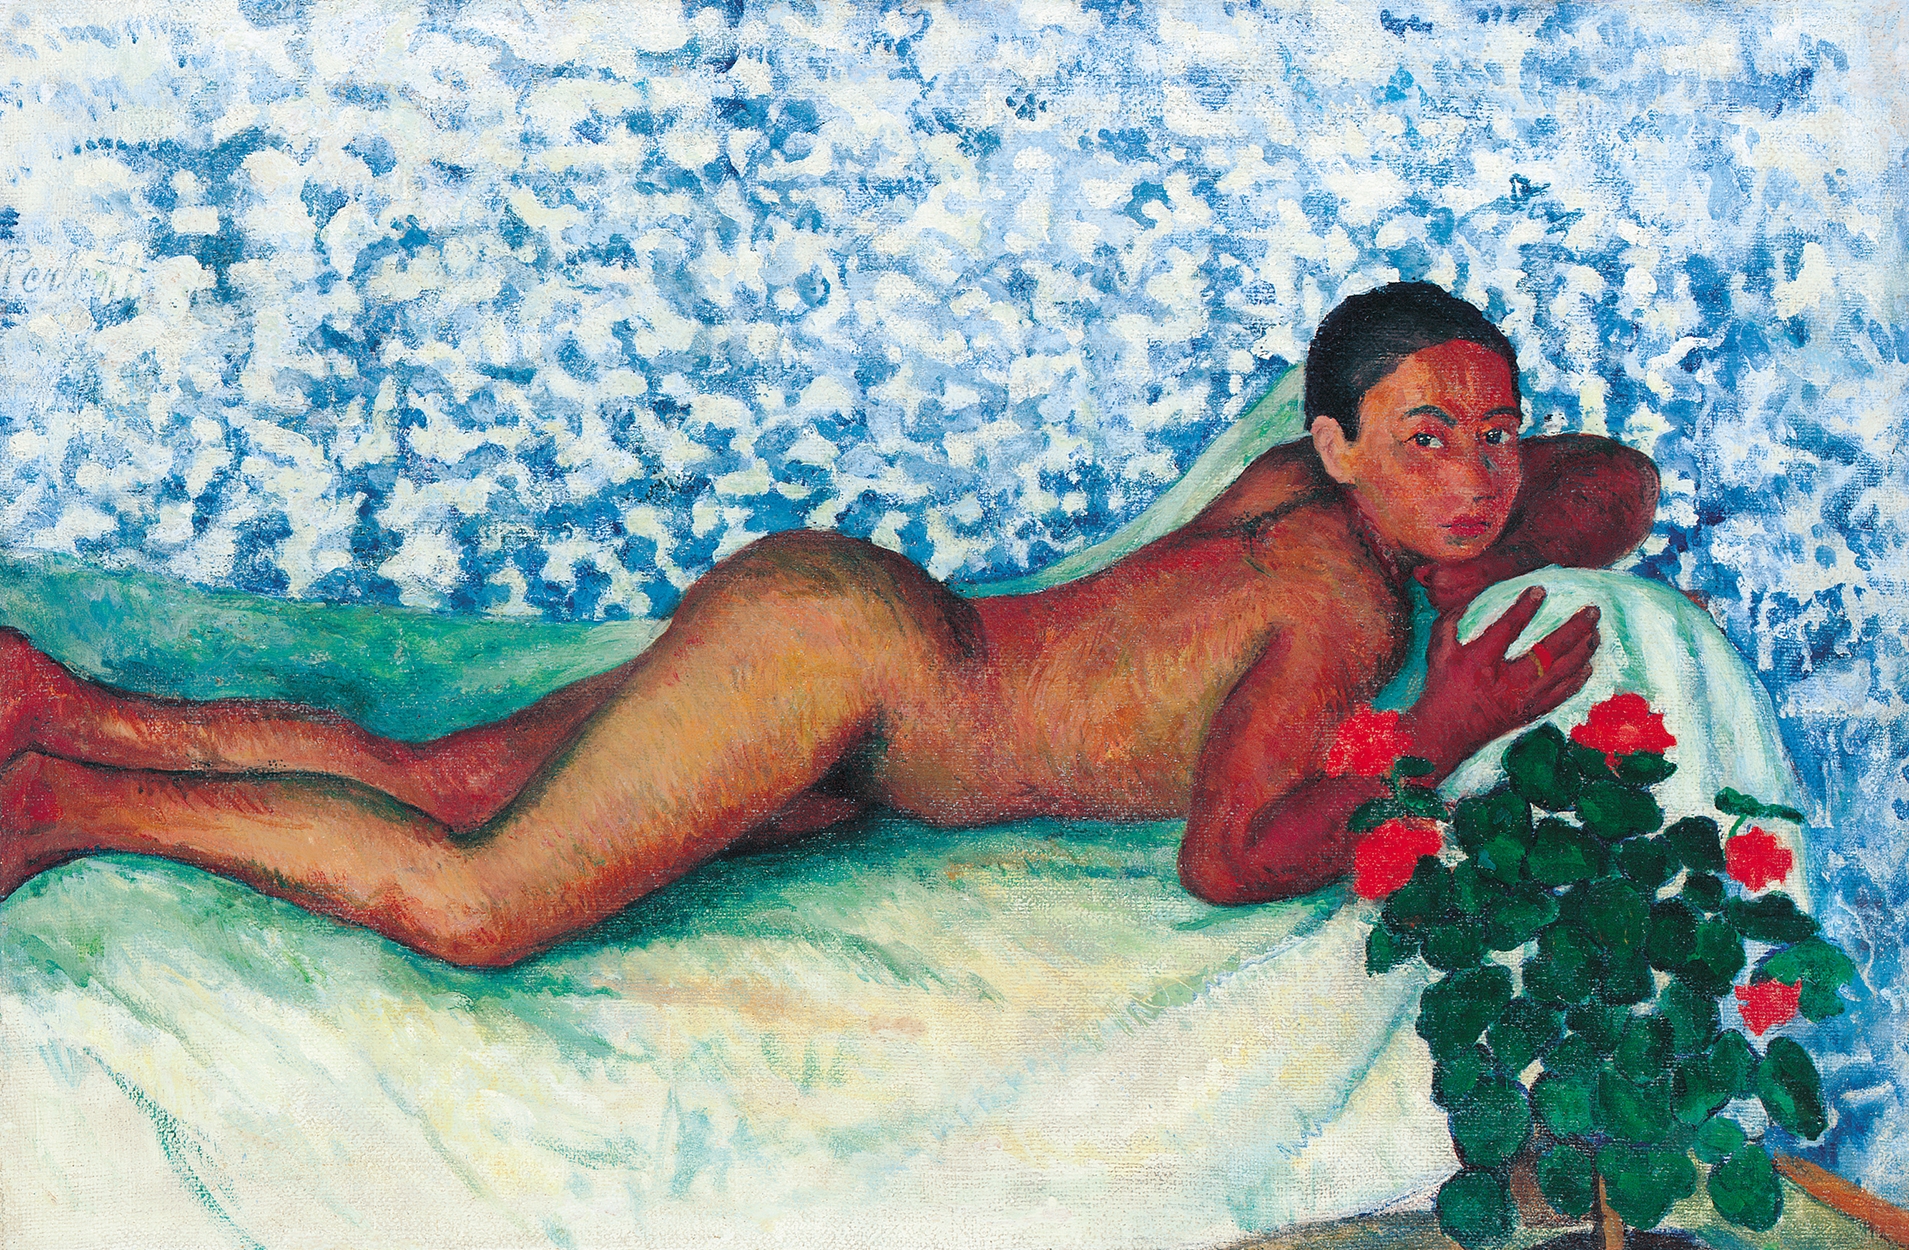 Perlrott-Csaba Vilmos (1880-1955) Nude (Nude Laying, Prone Nude), around 1907-1909